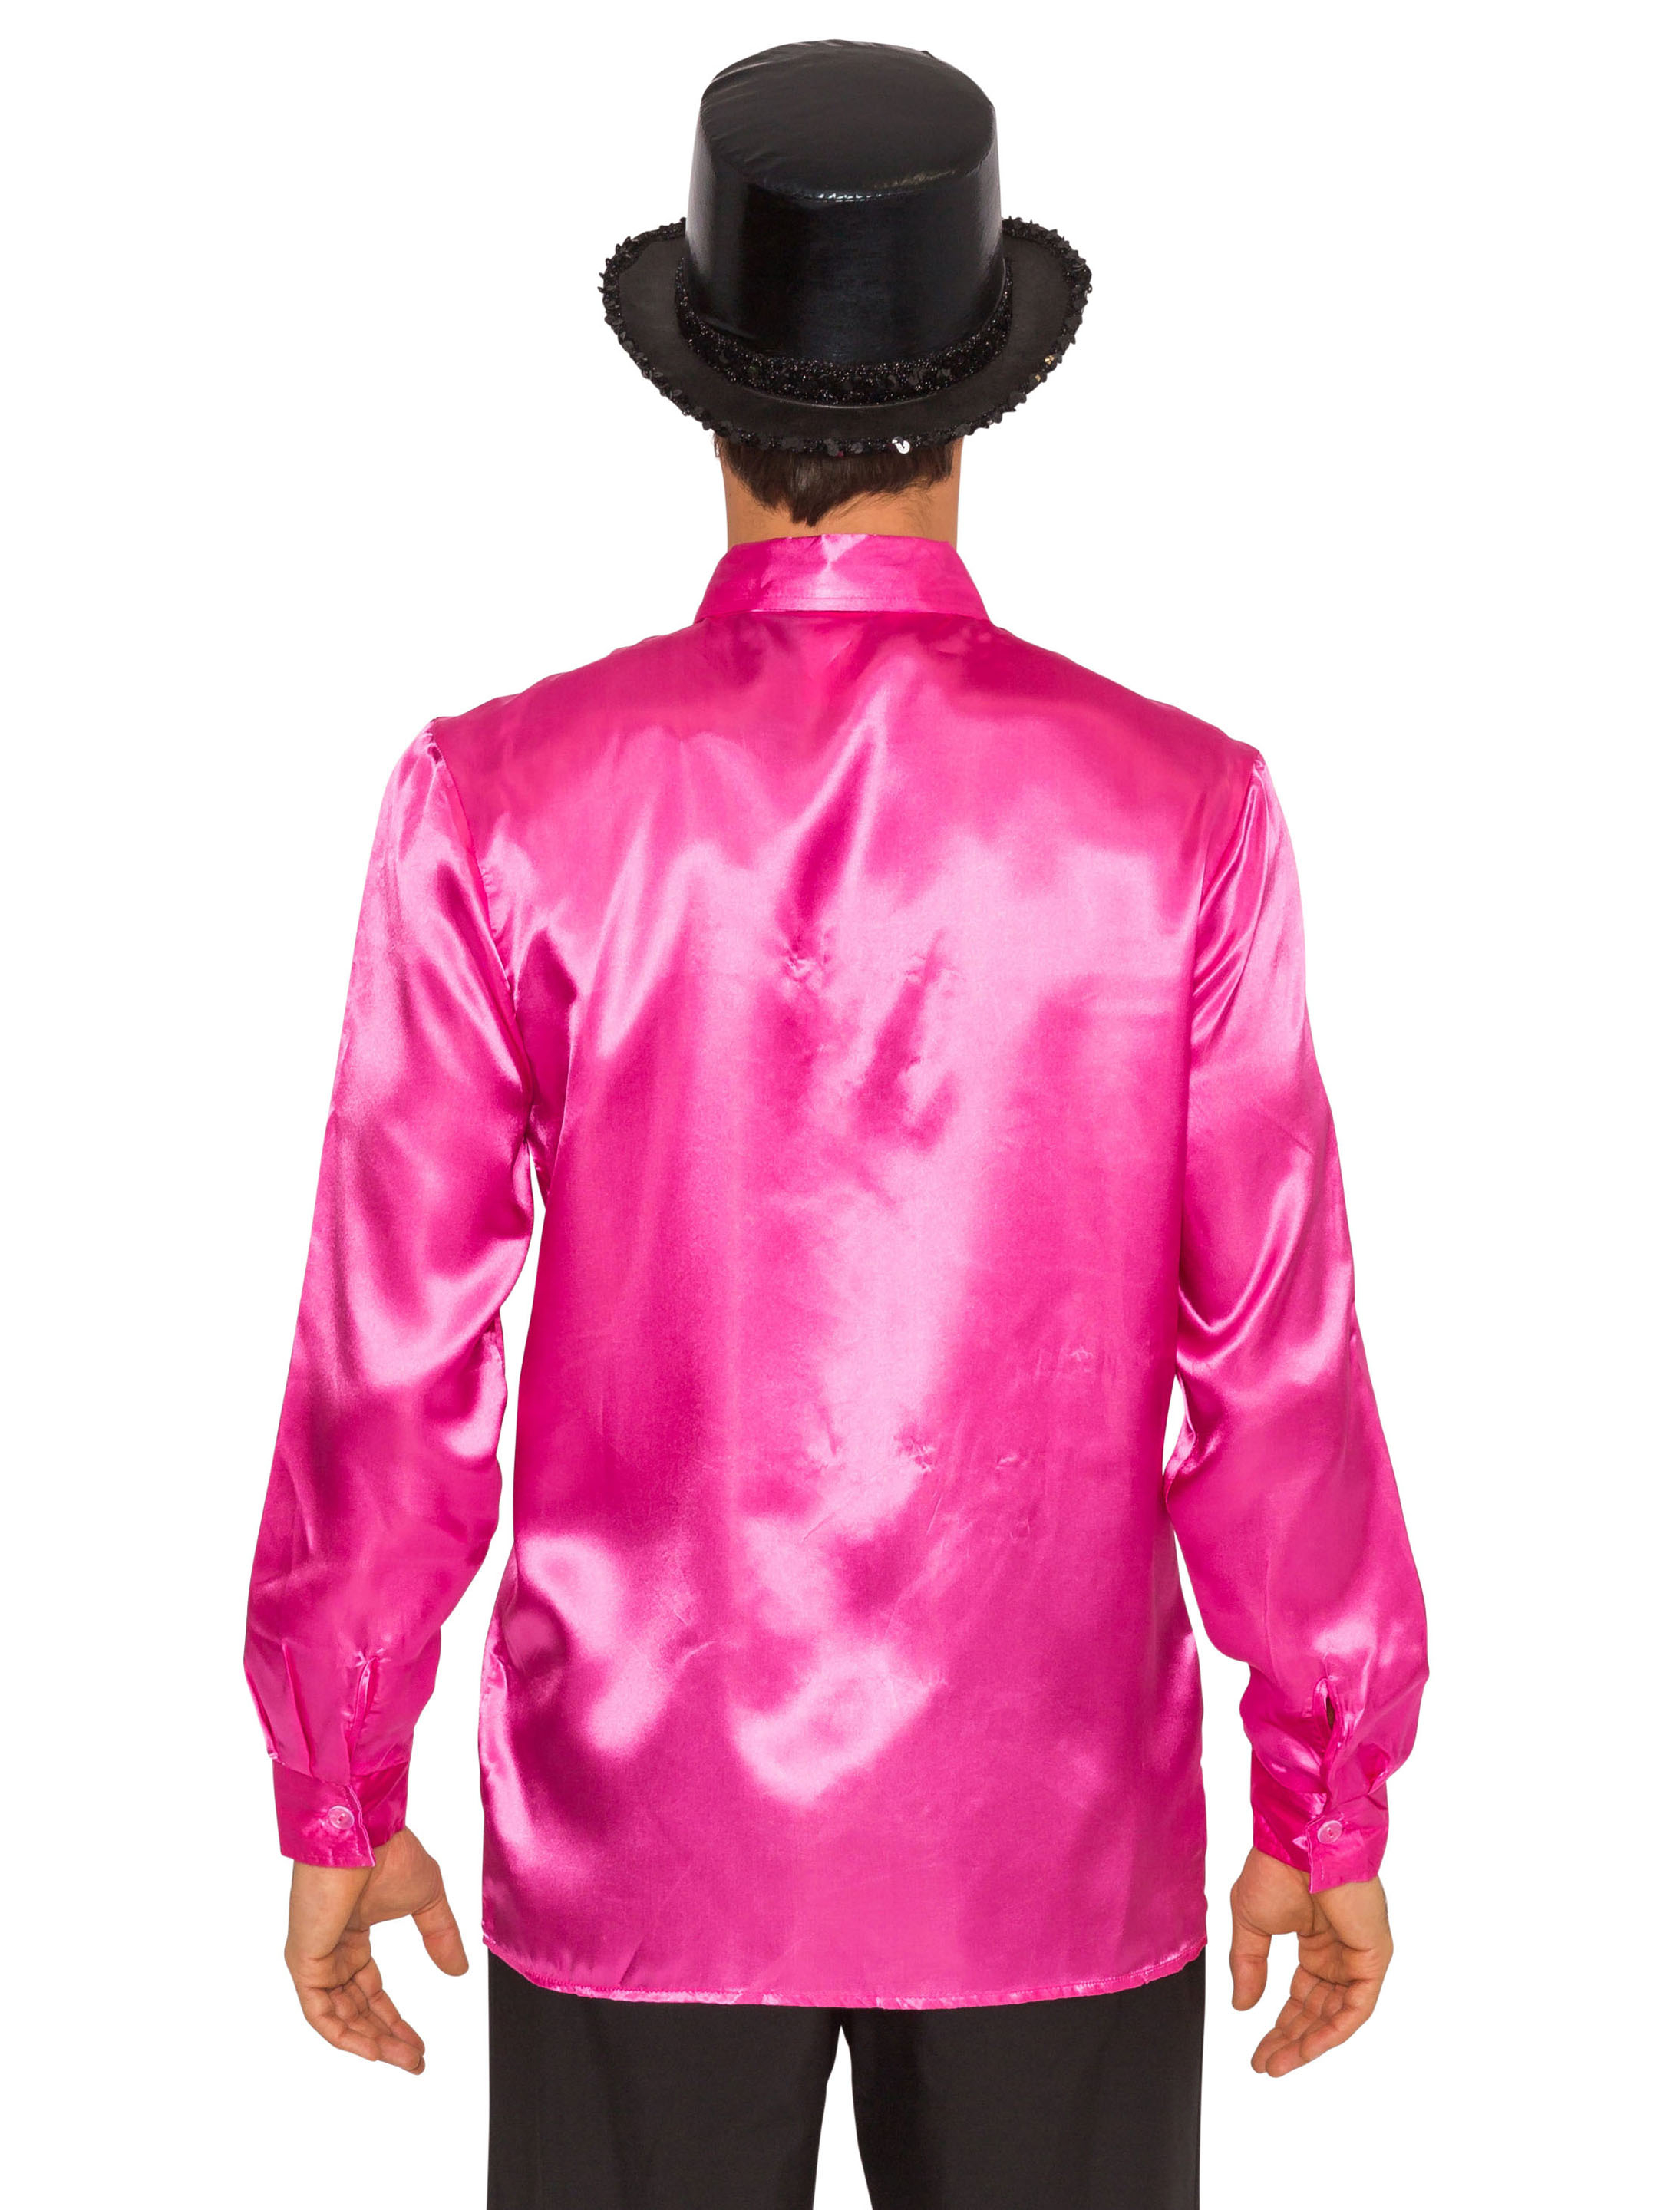 Rüschenhemd Satin pink 52